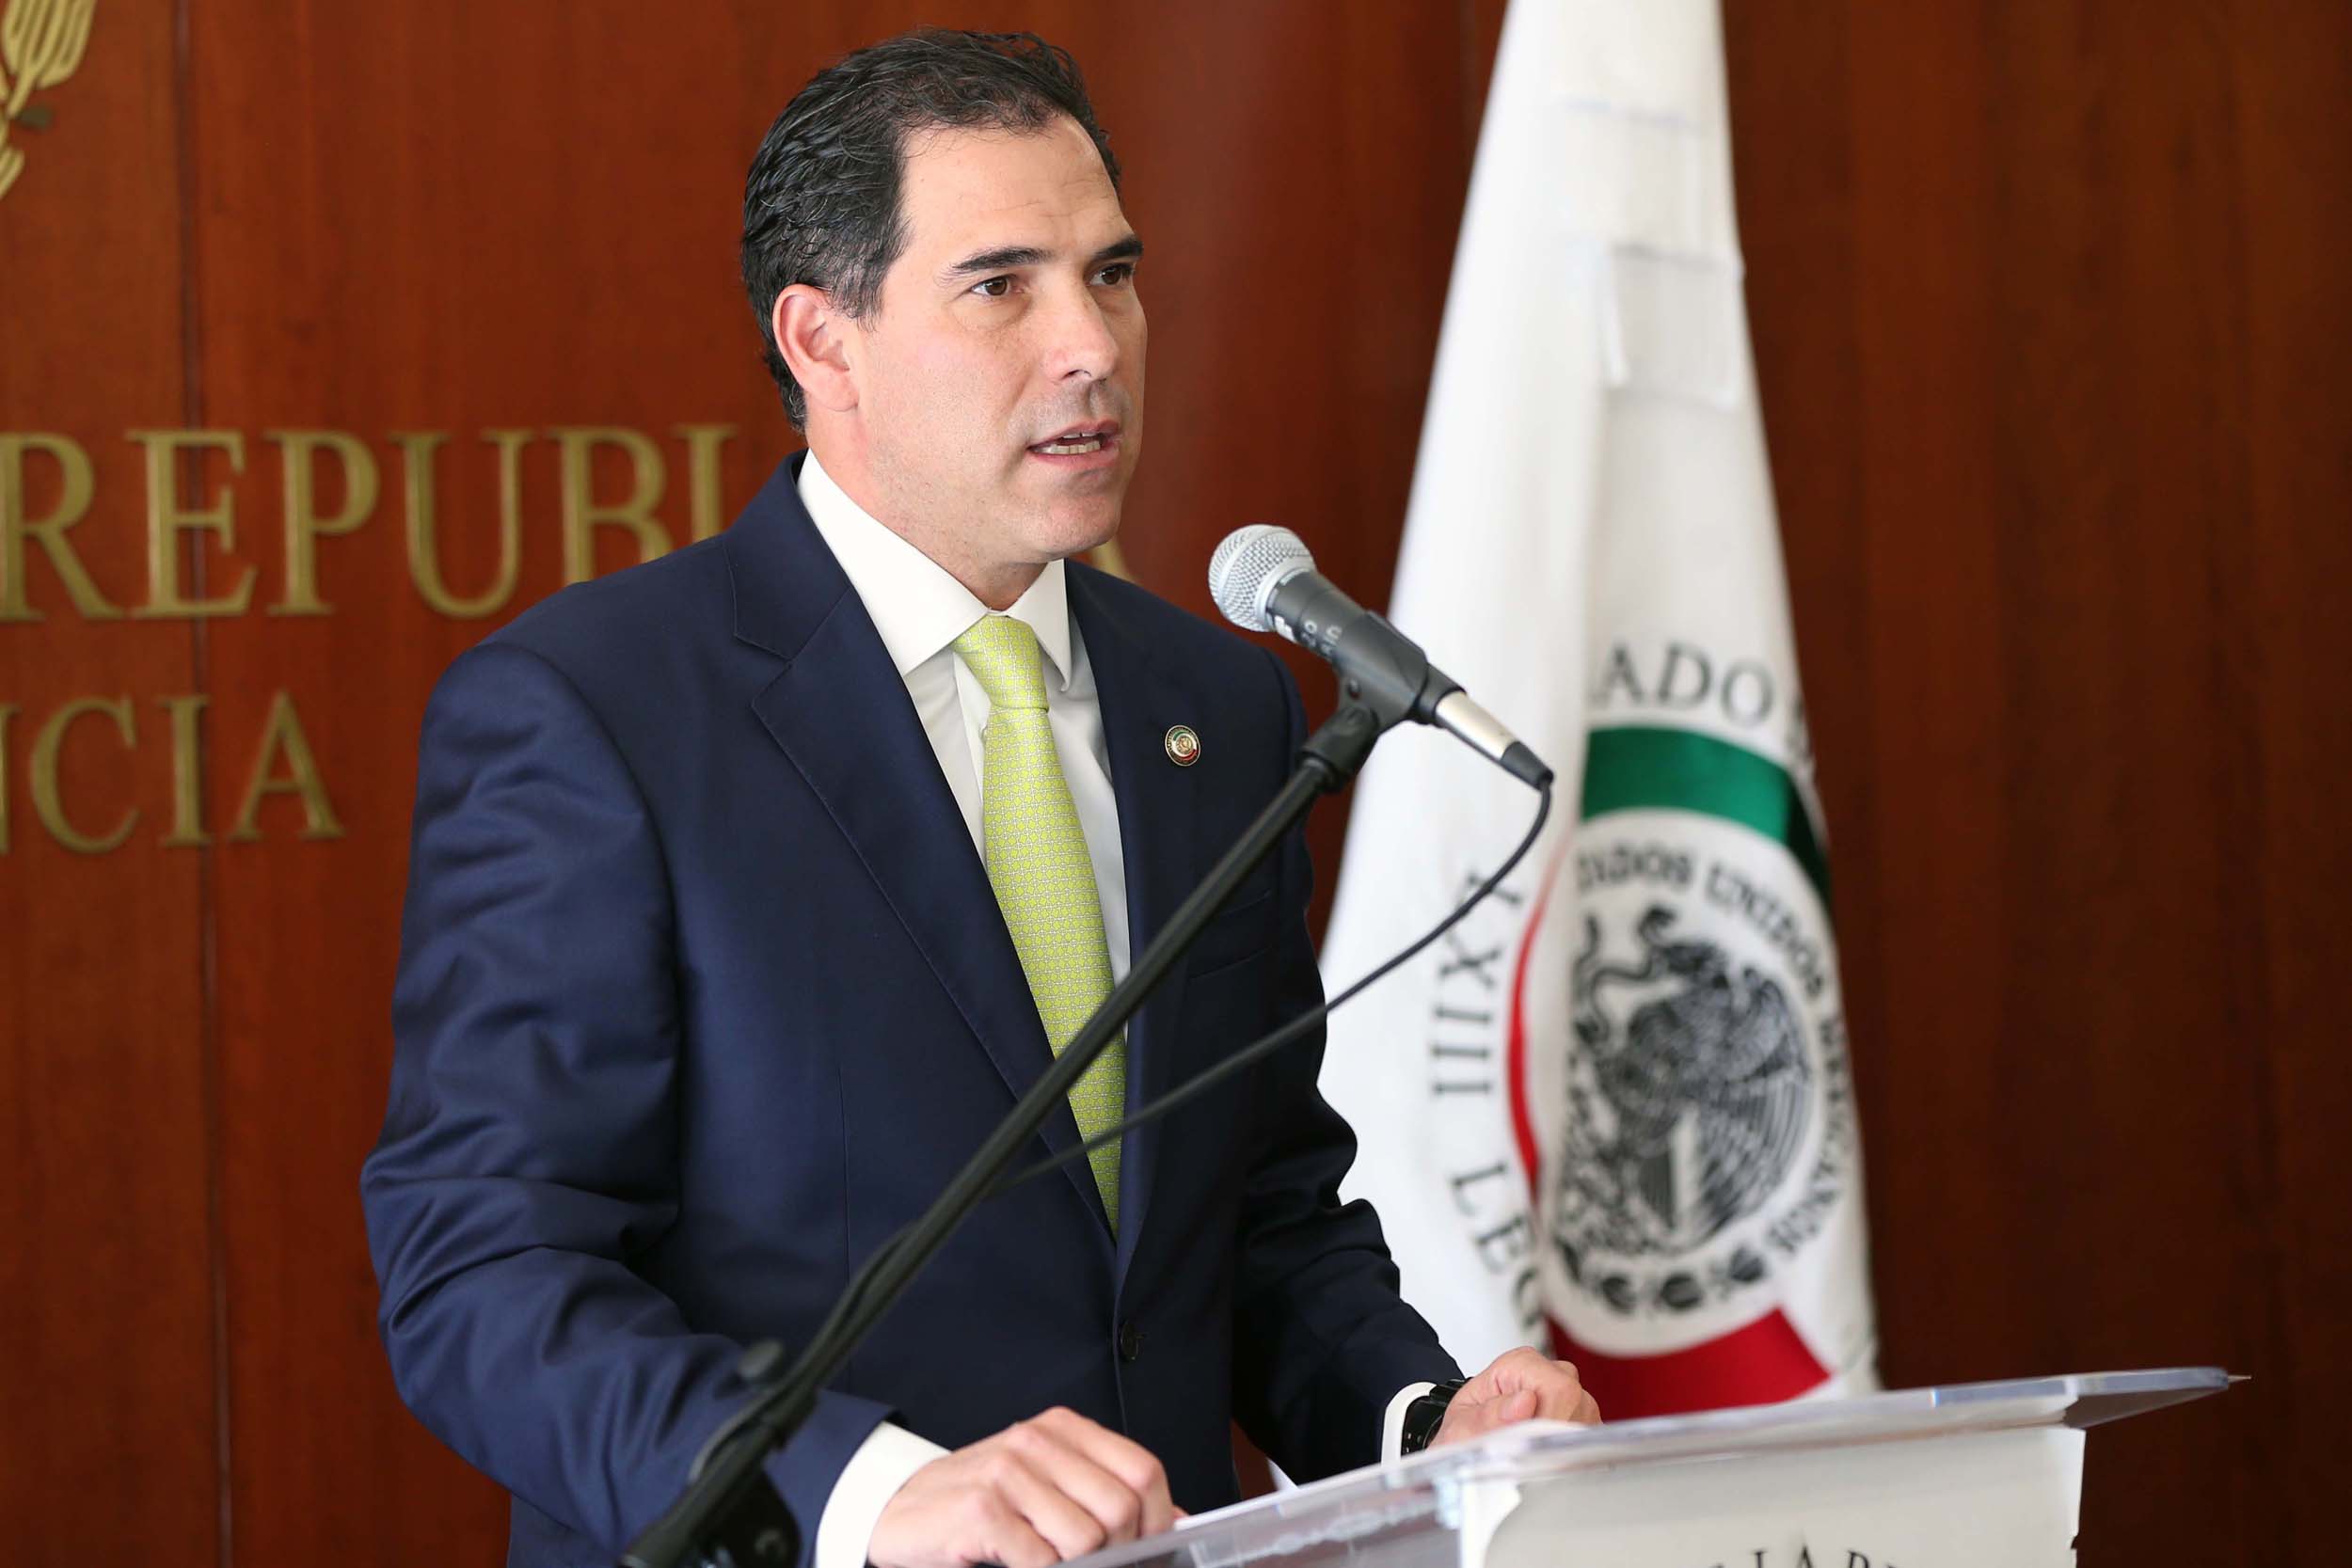  Senado mexicano refrenda voluntad de colaboración con EUA en la era Trump